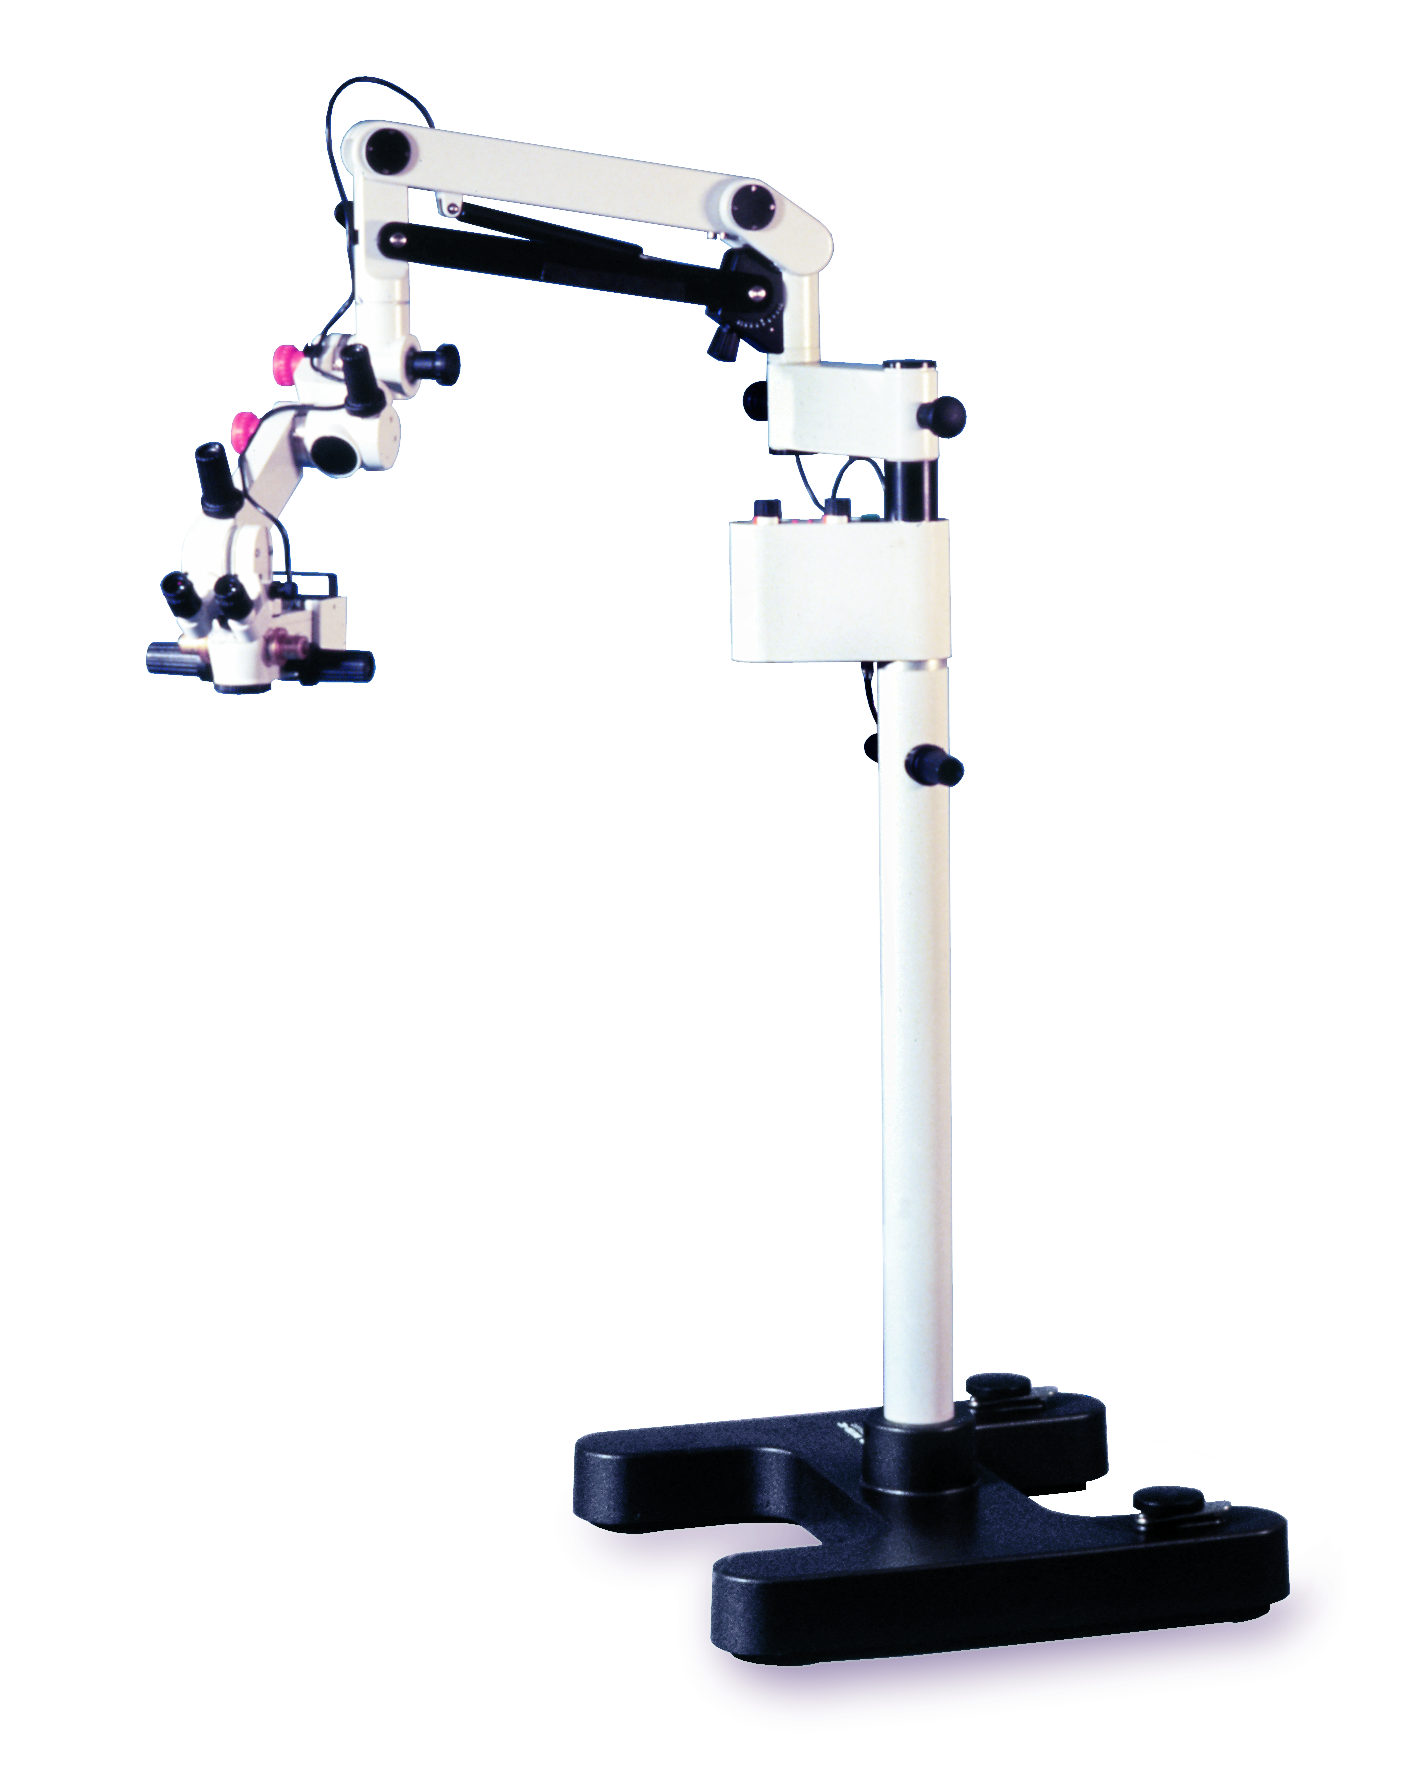 O microscópio cirúrgico manual para procedimentos microcirúrgicos Leica M651.